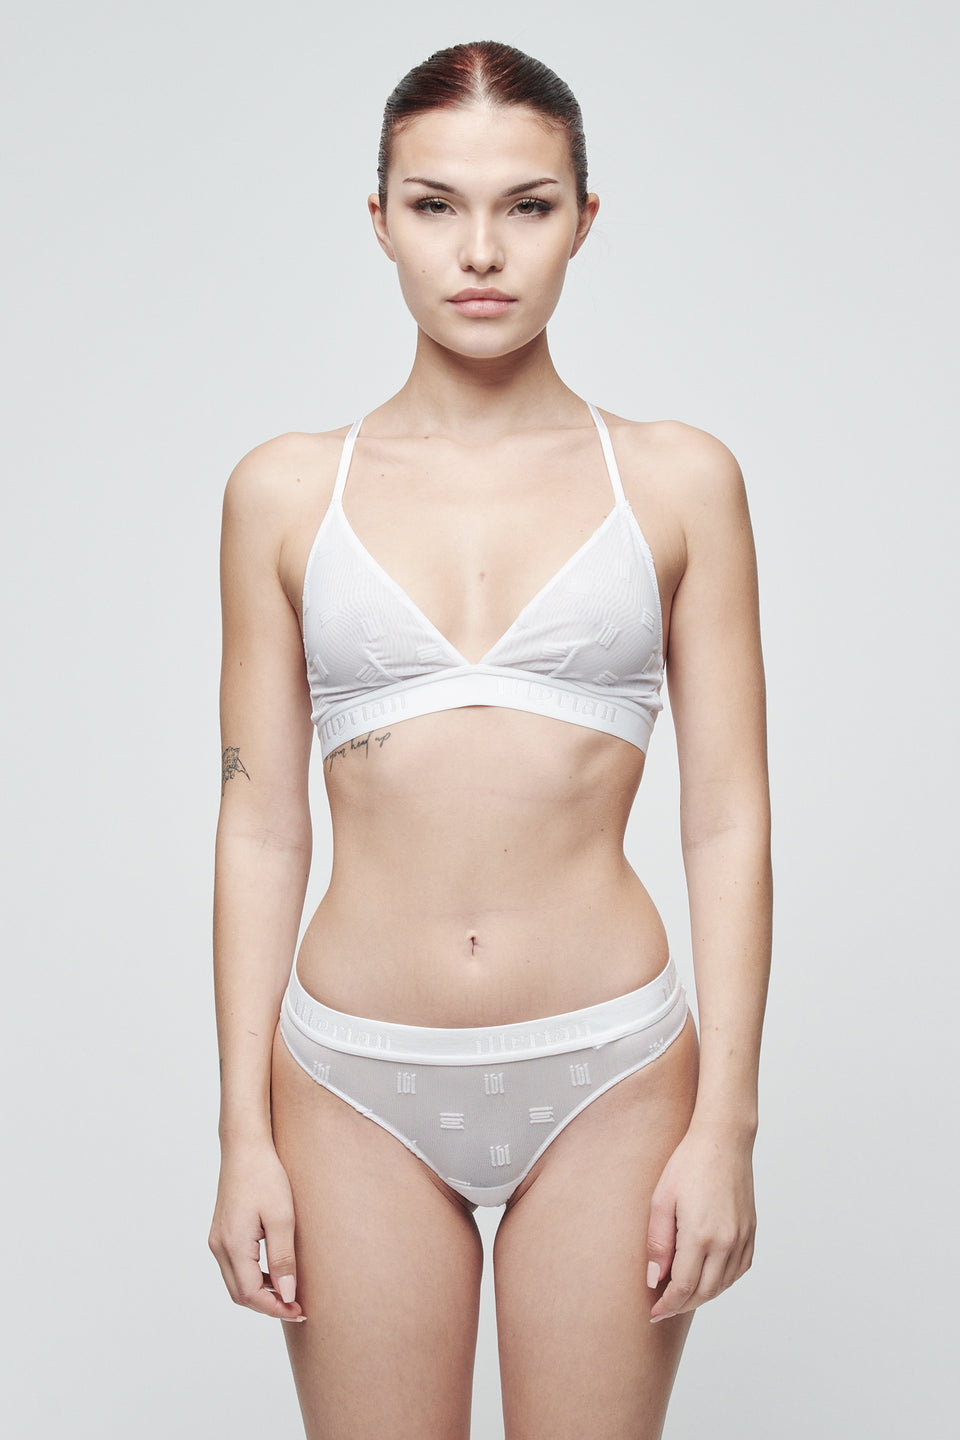 Women's Mesh Underwear - White